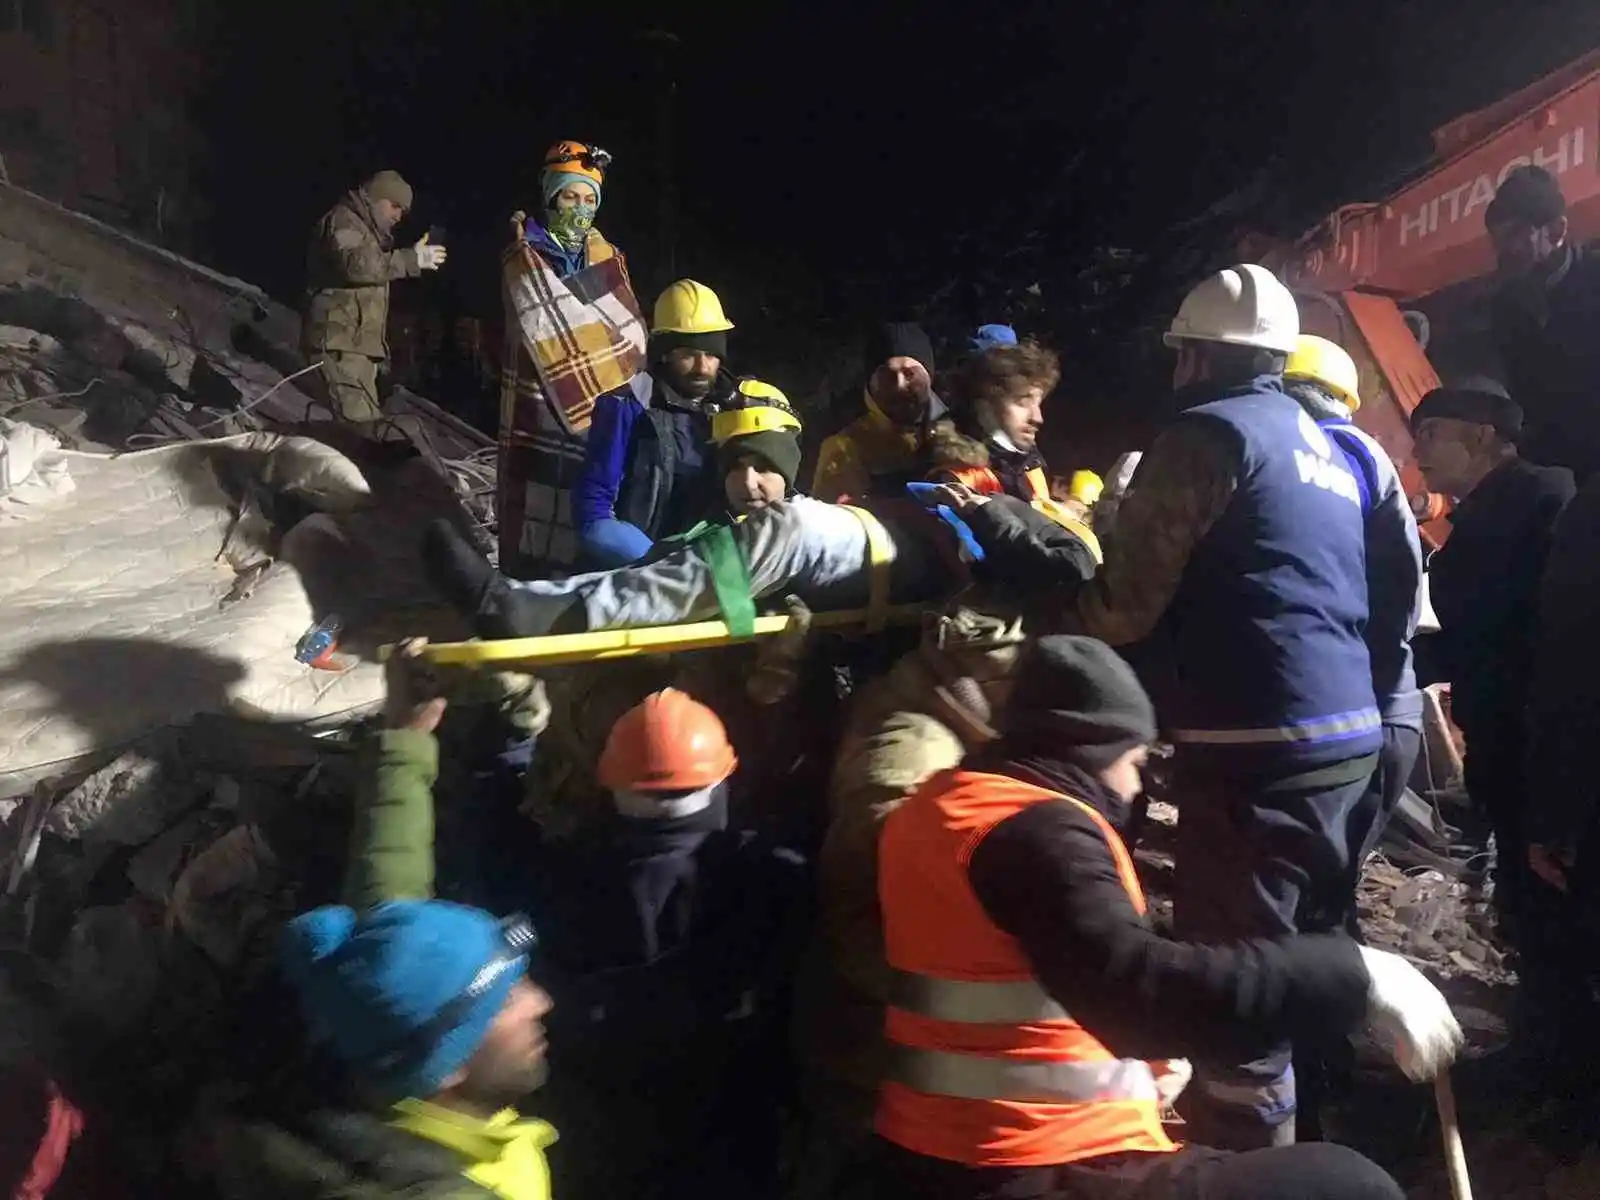 Malatya’da 45 saat sonra enkazdan 1 kişi daha sağ olarak kurtuldu
